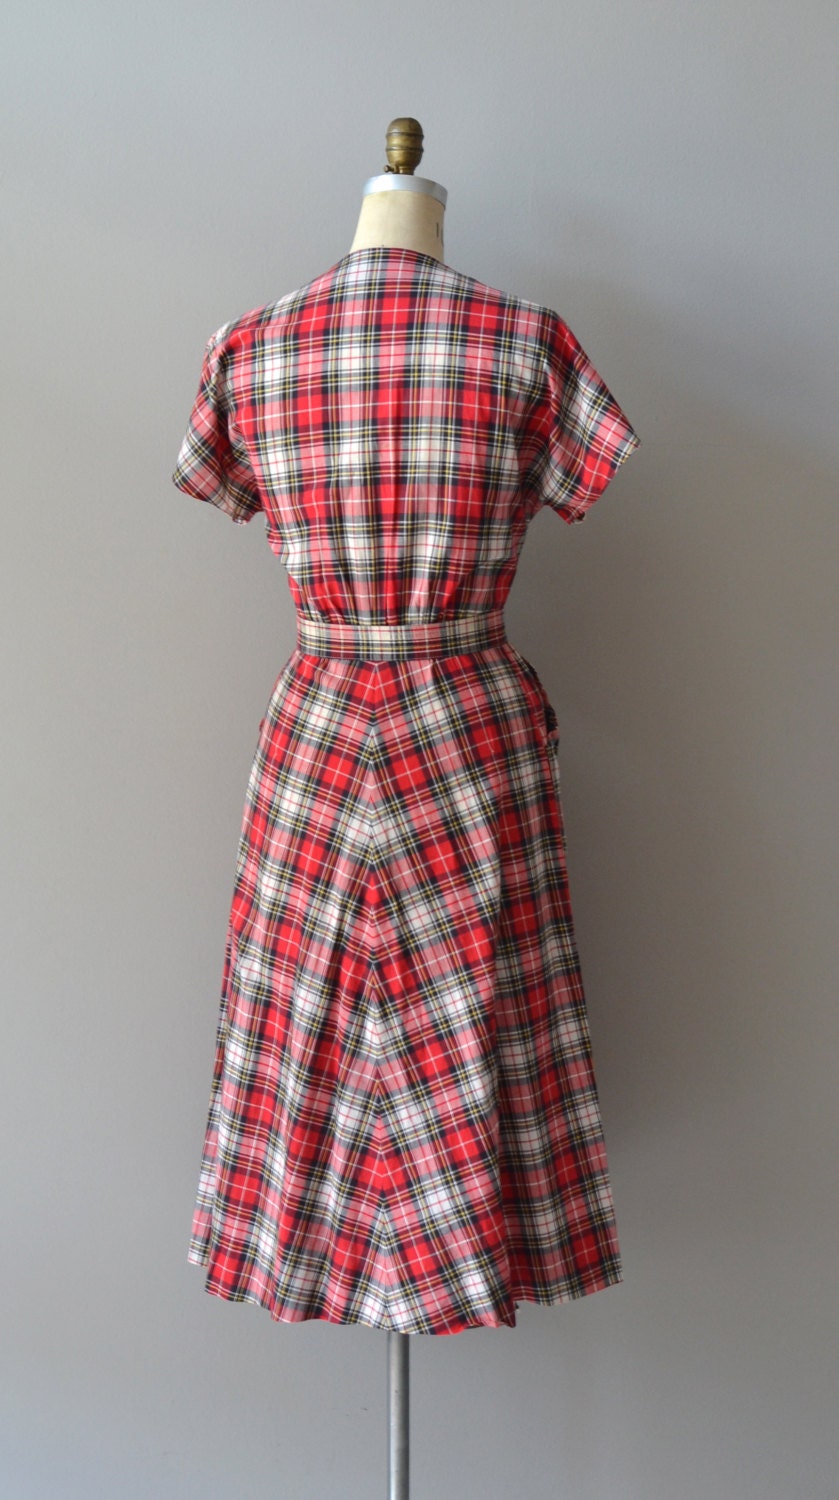 Wasem plaid dress / vintage plaid 50s dress / cotton 1950s